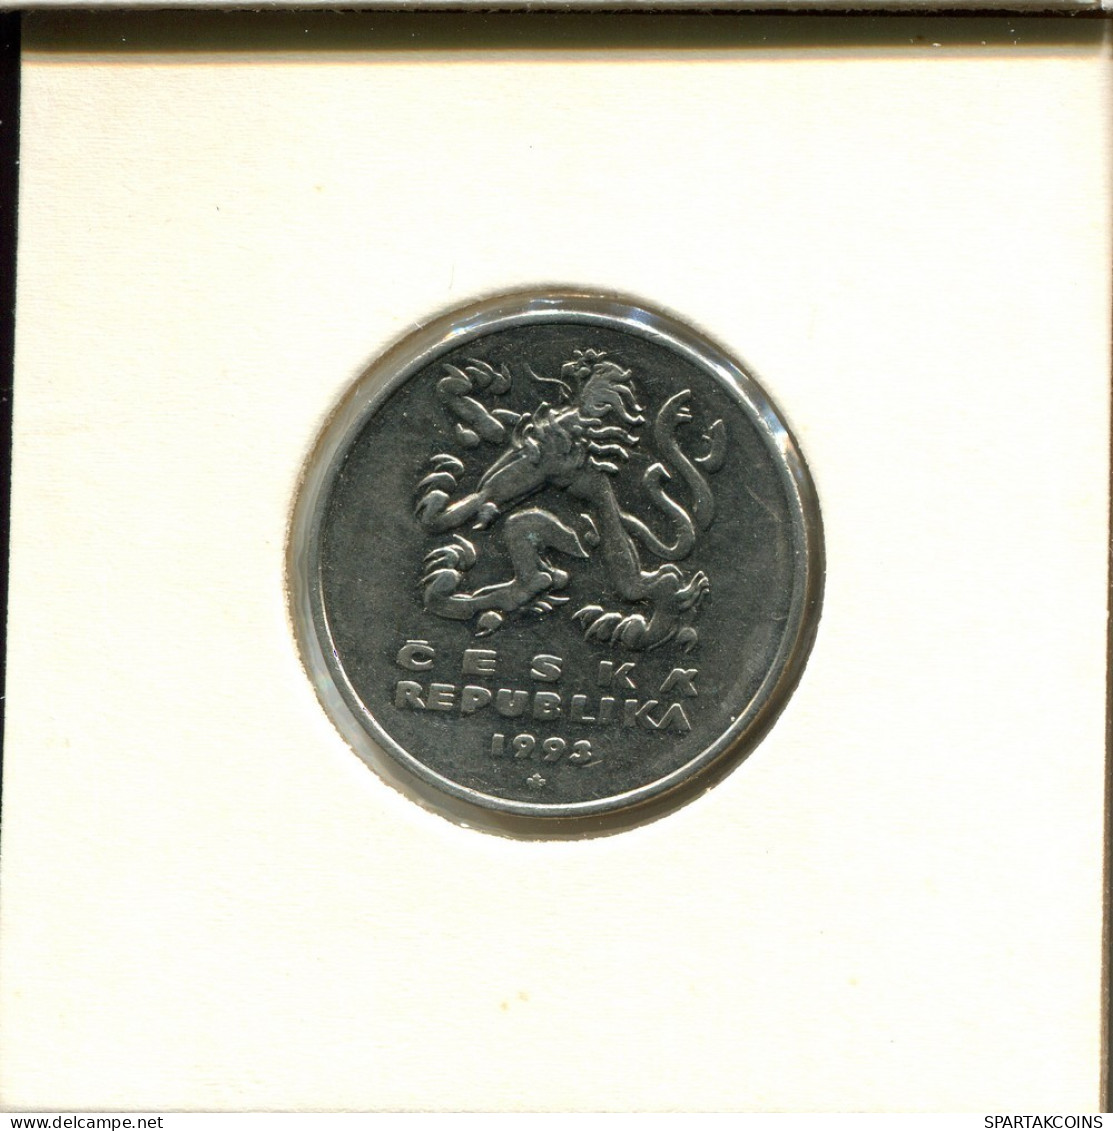 5 KORUN 1993 CZECH REPUBLIC Coin #AS923.U.A - Czech Republic